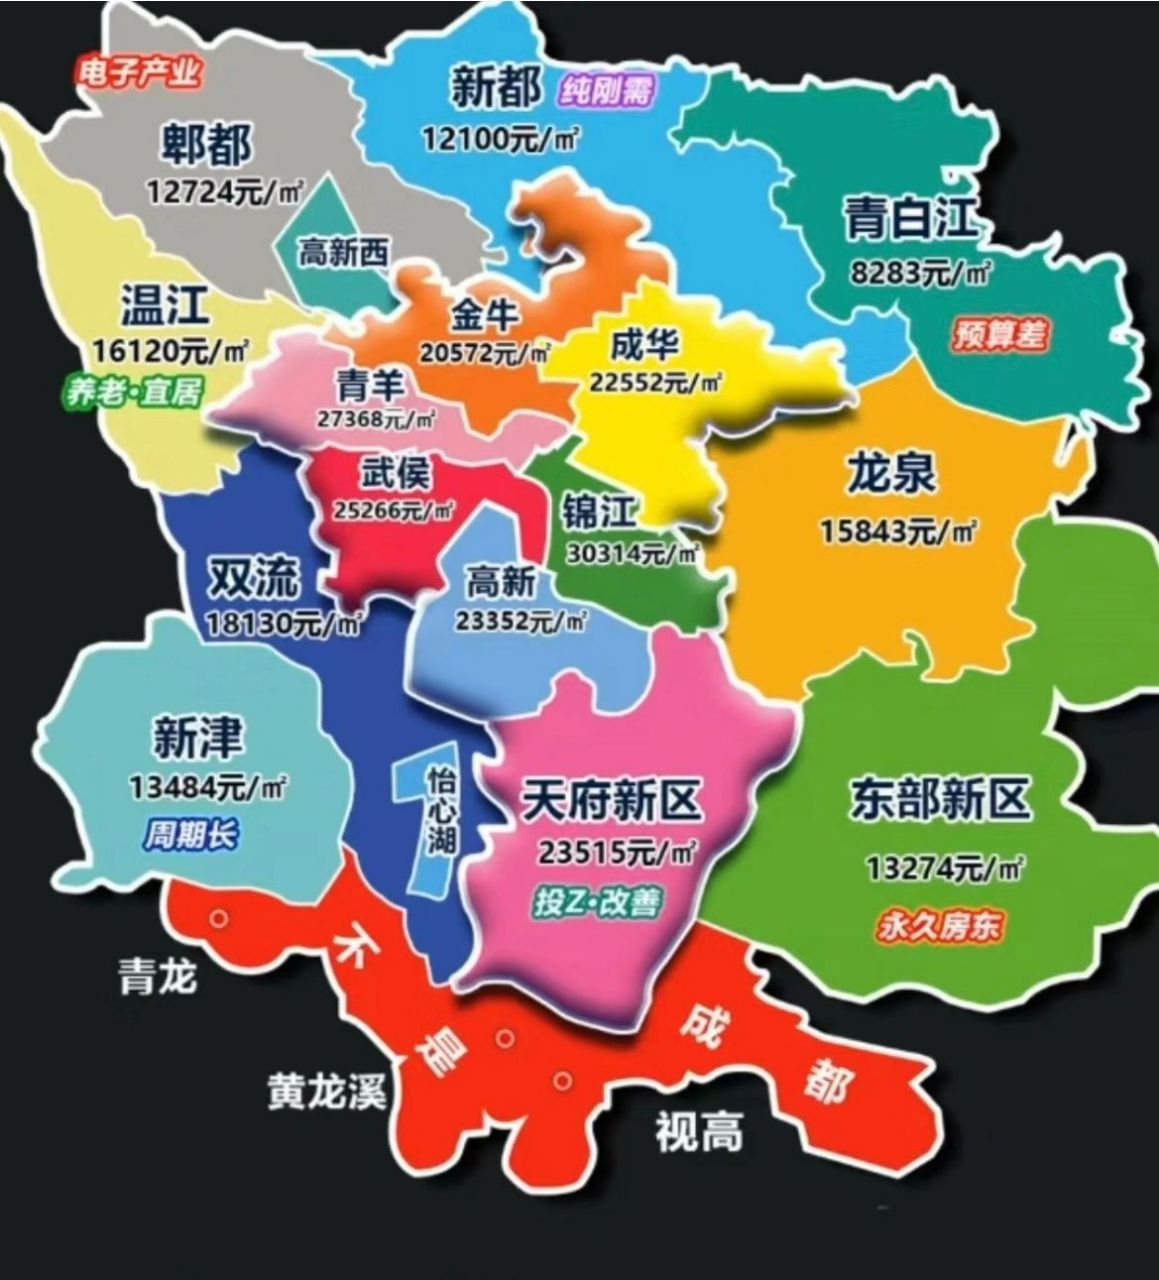 成都区域分布图2020图片